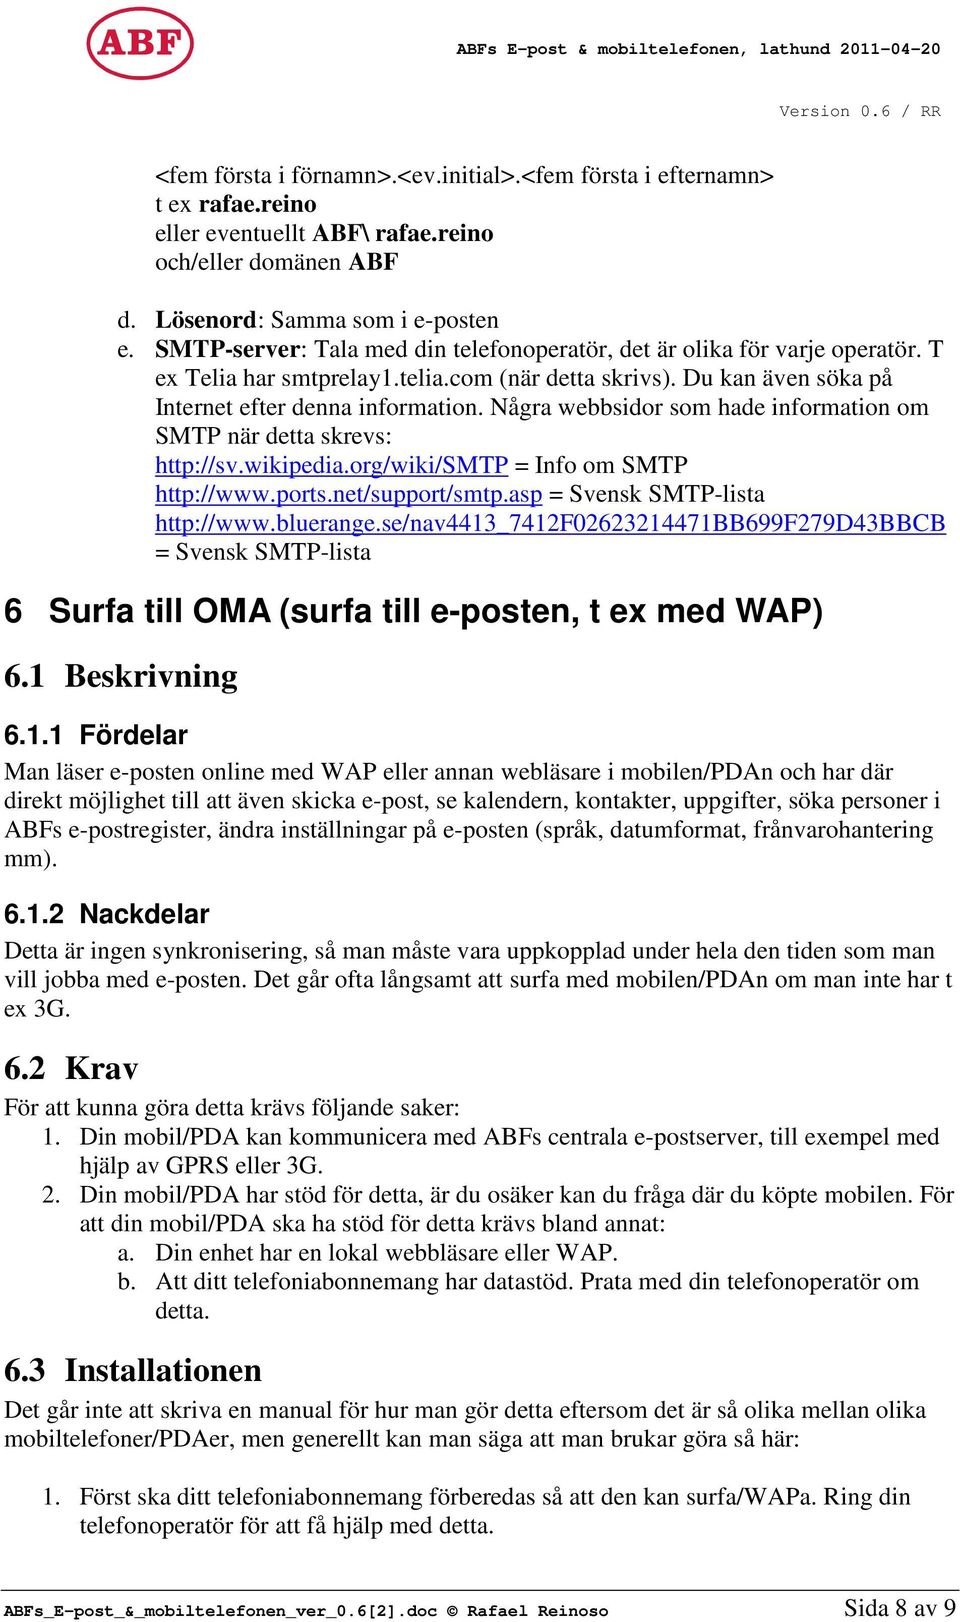 Några webbsidor som hade information om SMTP när detta skrevs: http://sv.wikipedia.org/wiki/smtp = Info om SMTP http://www.ports.net/support/smtp.asp = Svensk SMTP-lista http://www.bluerange.